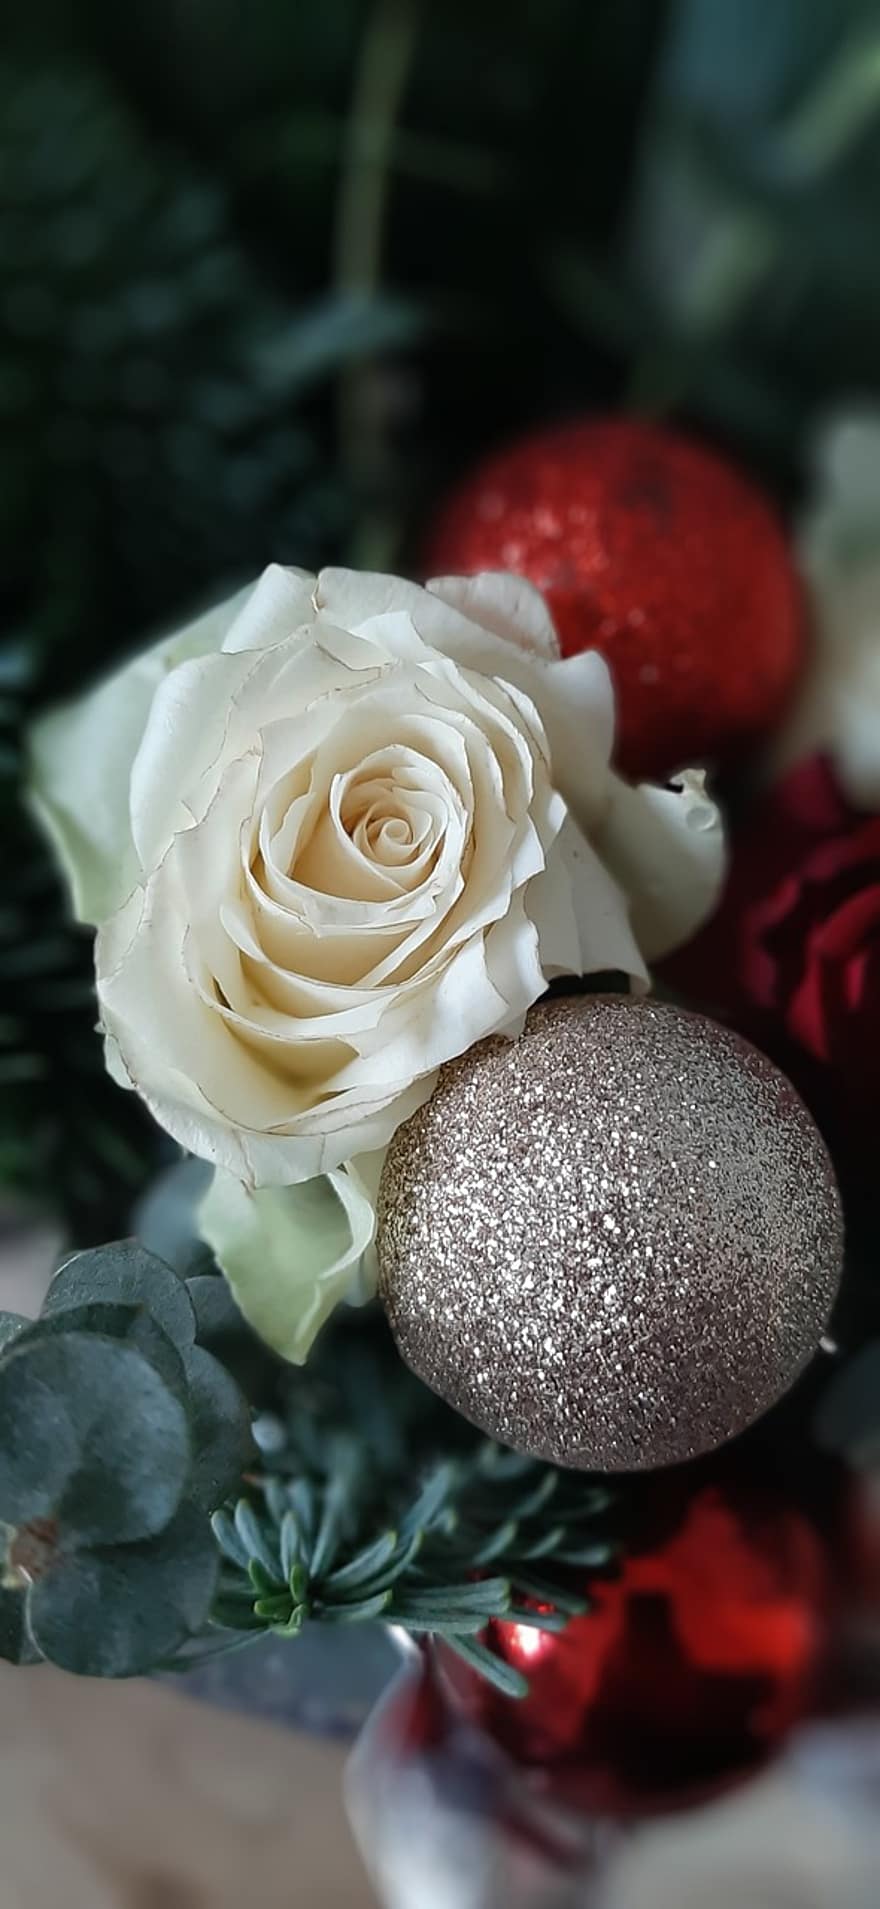 mawar, hari Natal, bola Natal, potongan natal, bunga, merangkai bunga, hadiah